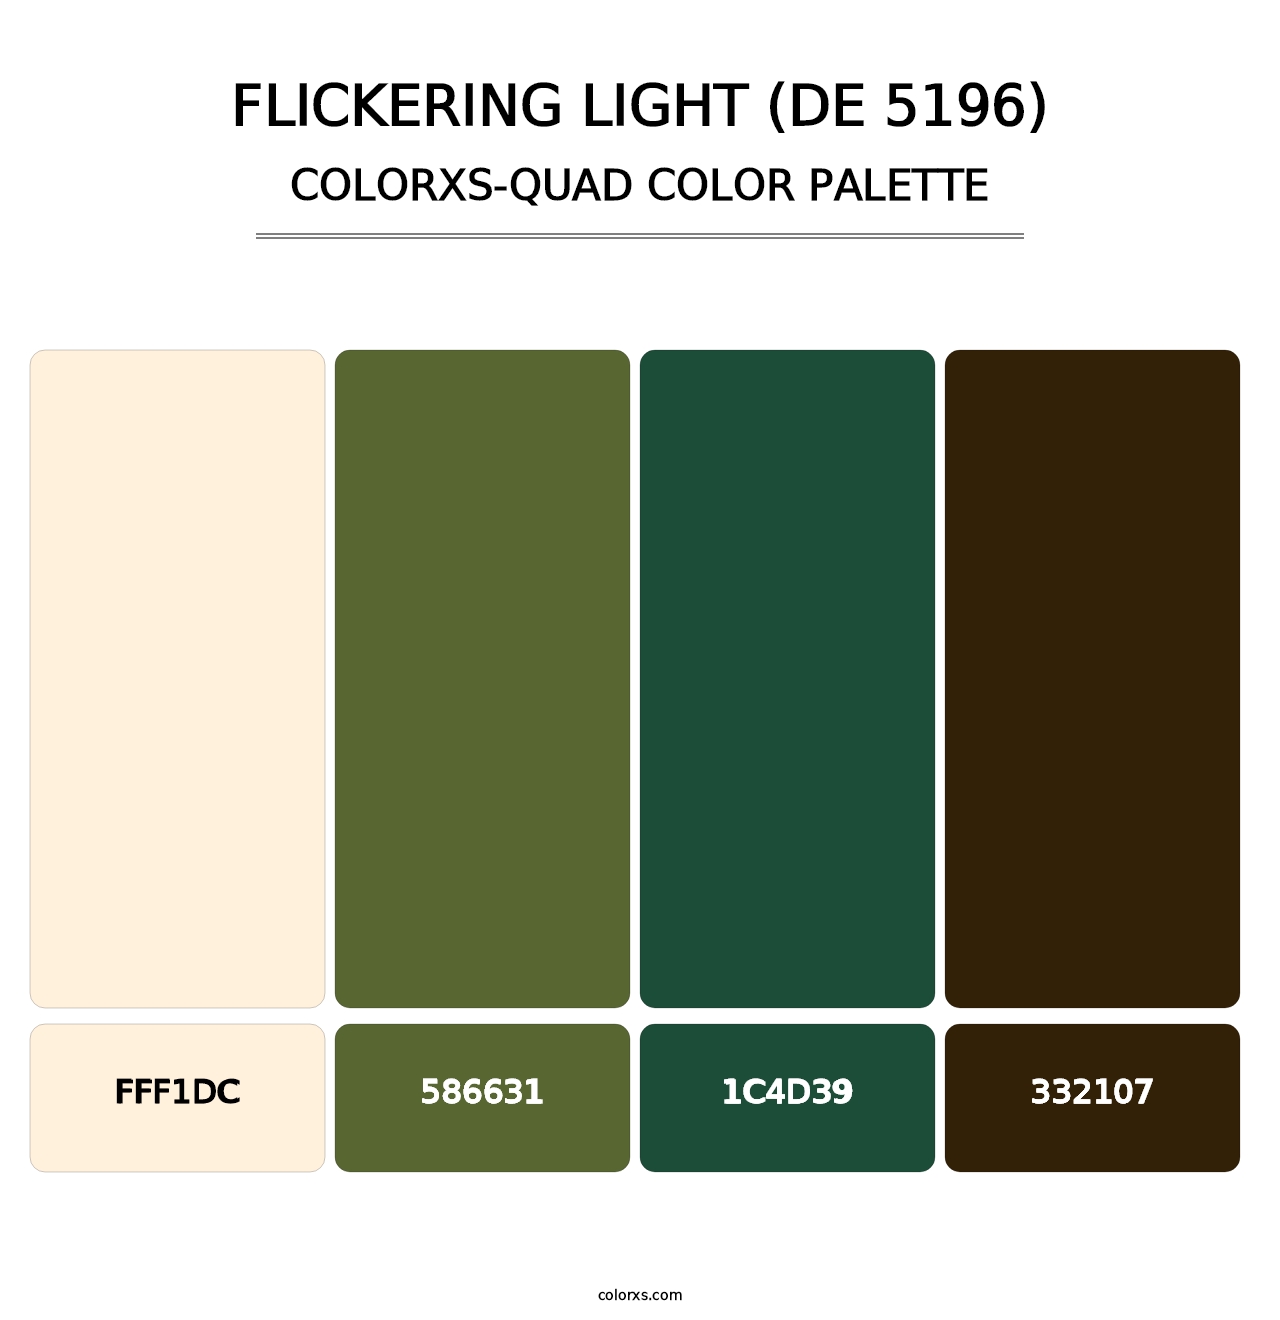 Flickering Light (DE 5196) - Colorxs Quad Palette